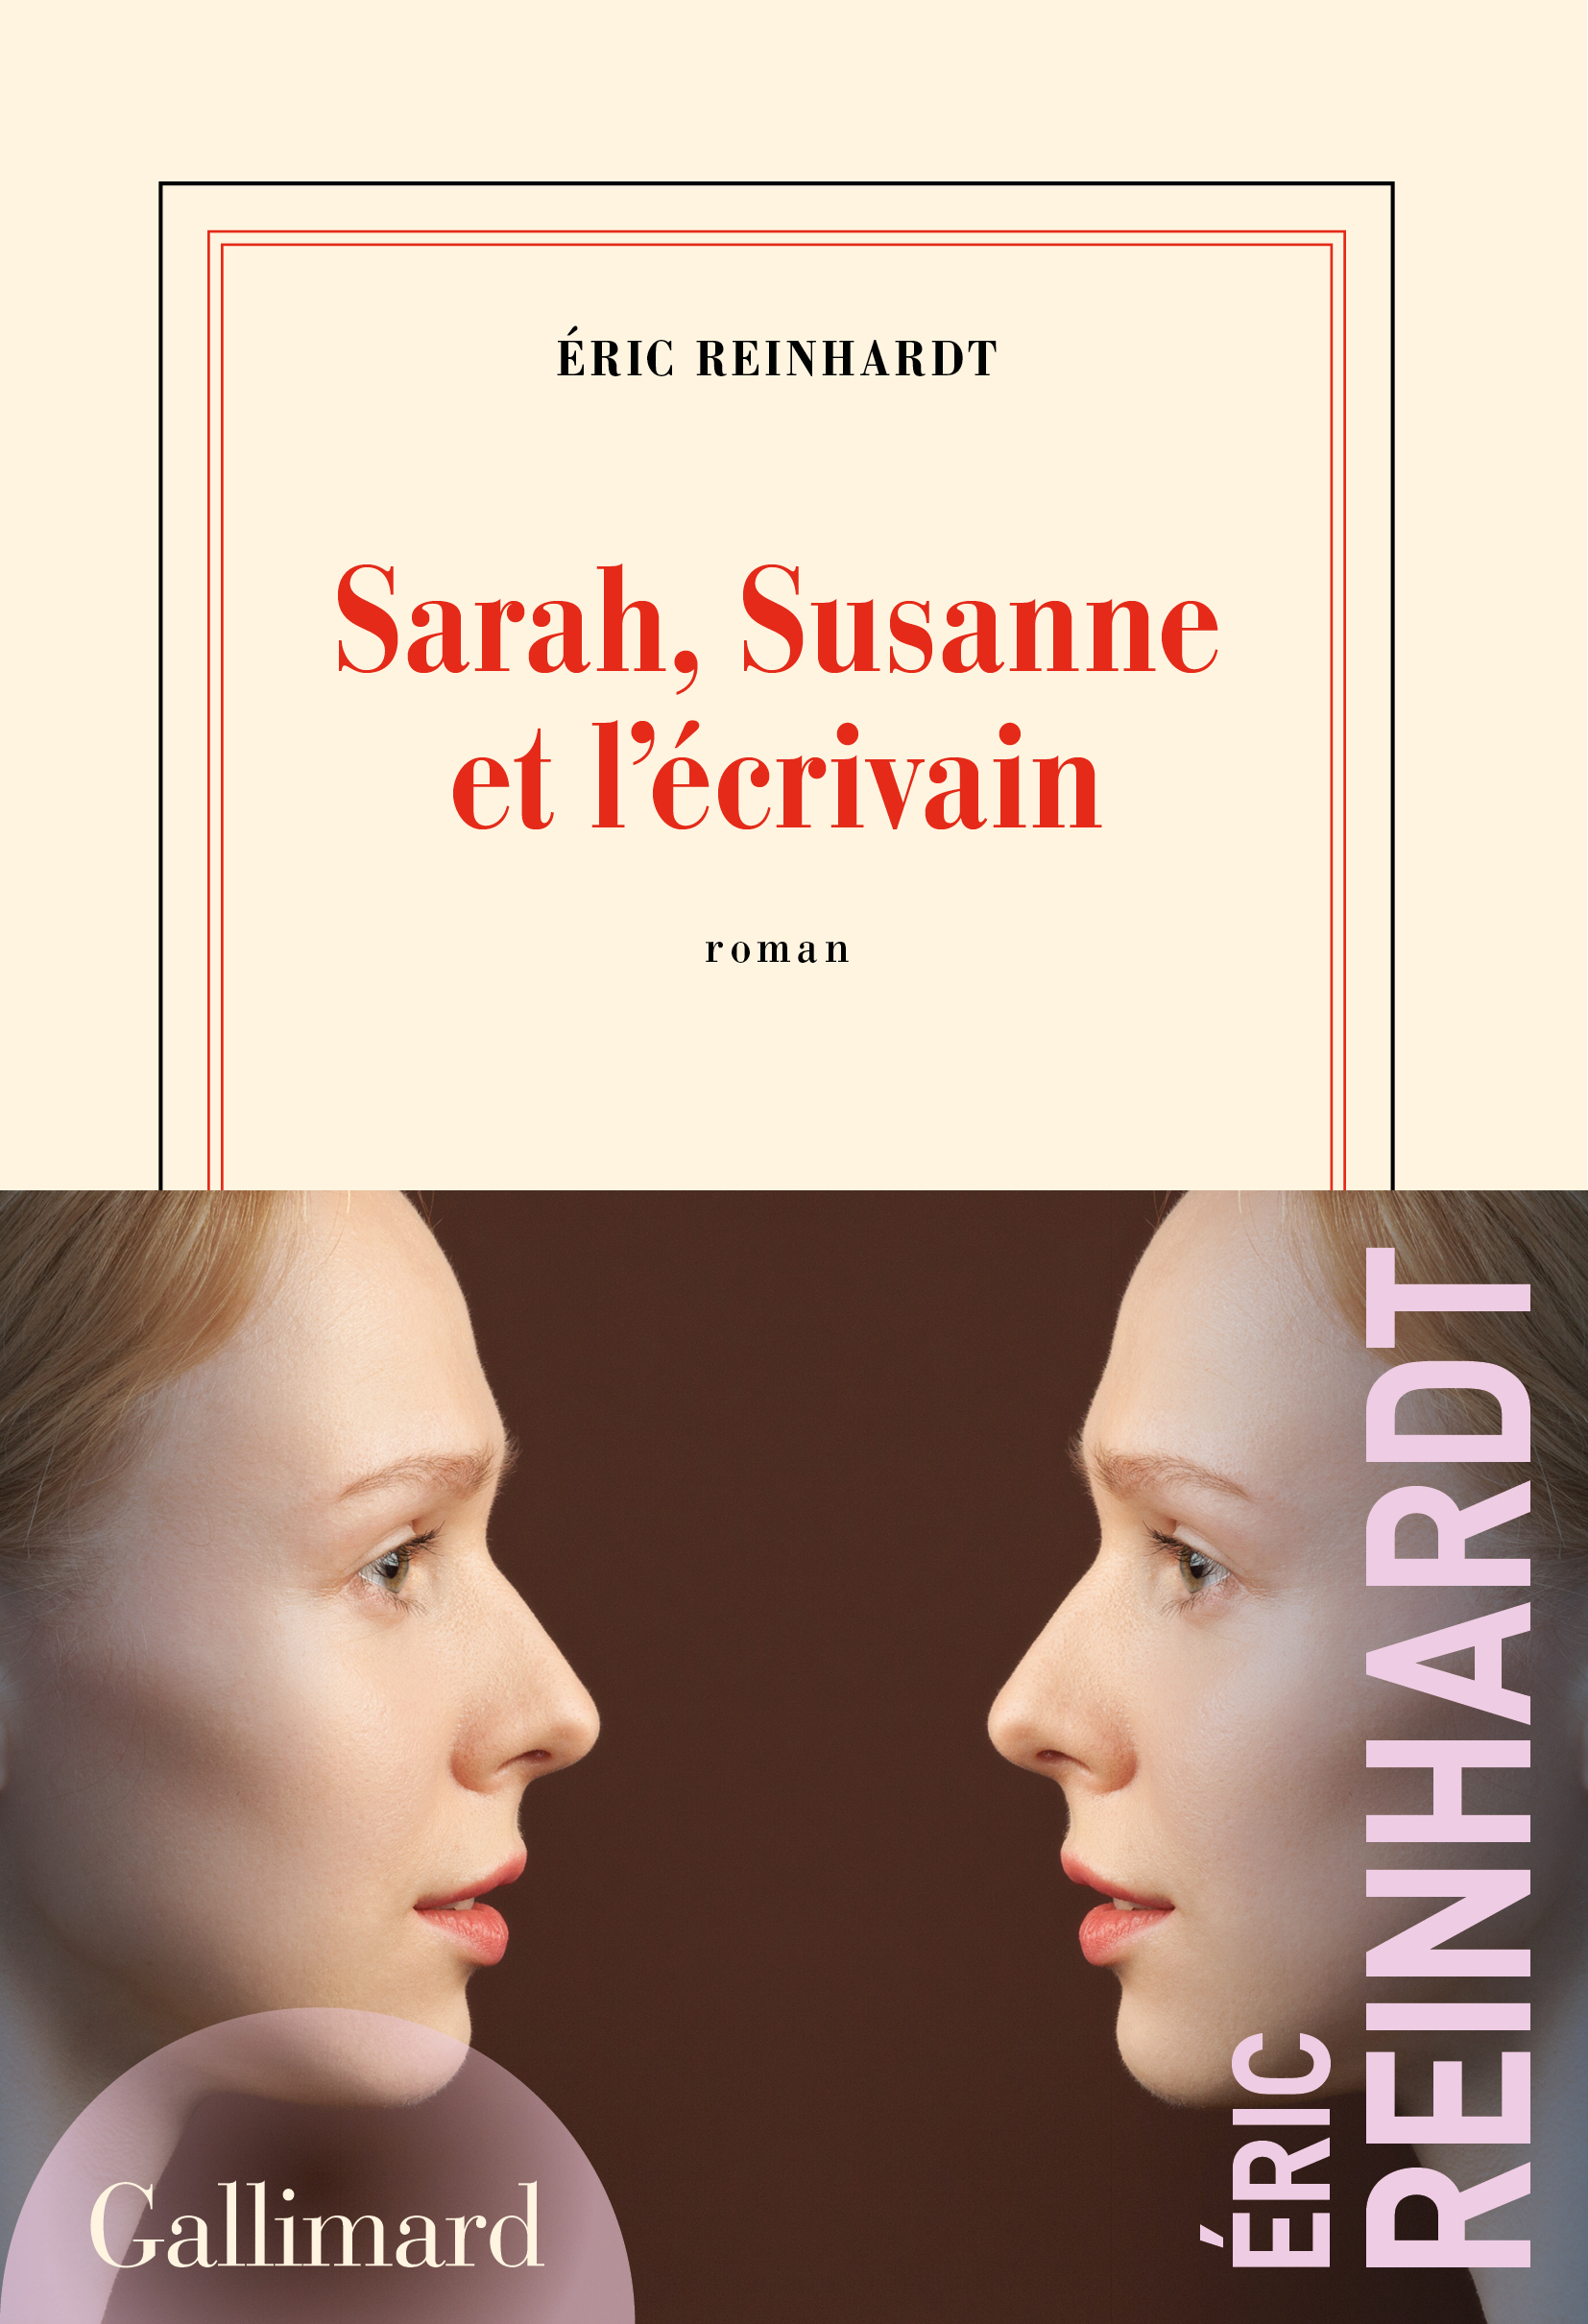 Afficher "Sarah, Susanne et l’écrivain"